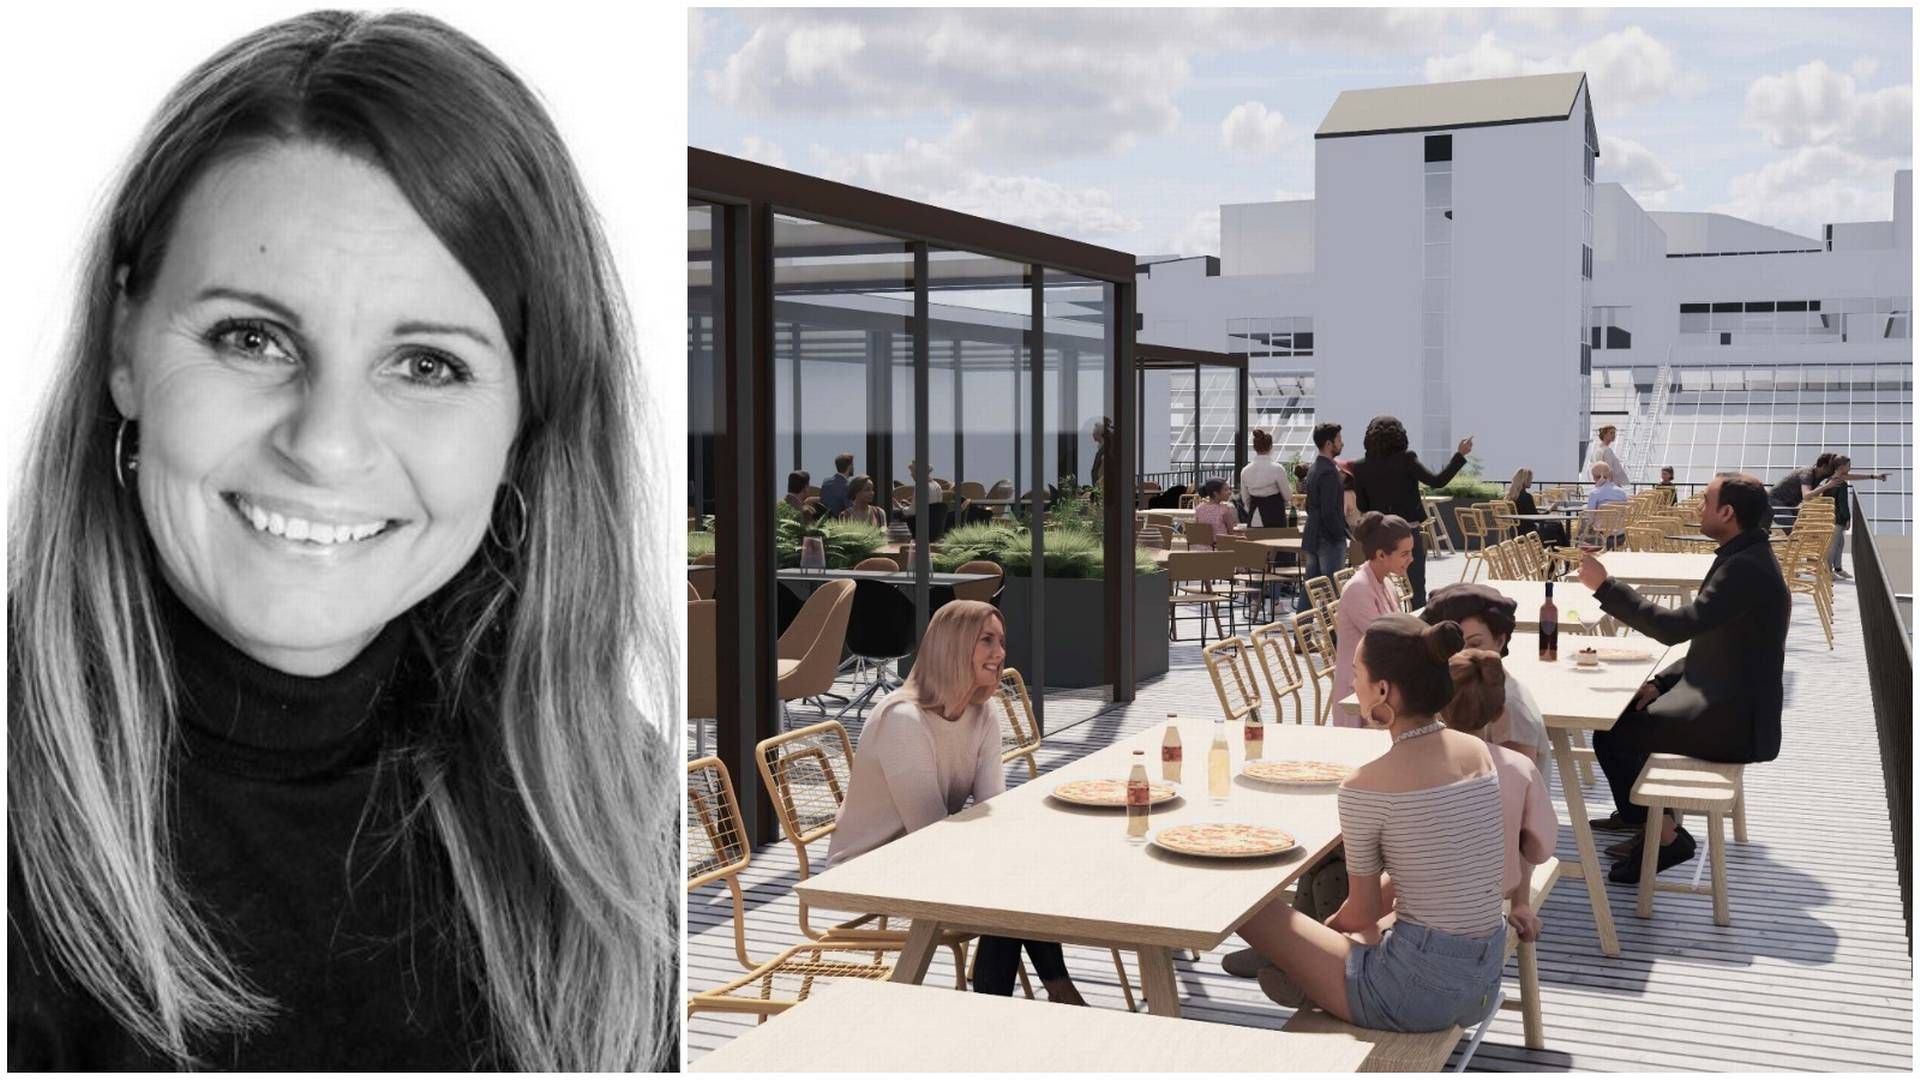 FÅR 700 SITTEPLASSER: Thon Eiendoms Hilde Kringlebotn kan ønske Olivia velkommen til Sandnes. Restauranten får over 700 spiseplasser over tre etasjer, inkludert takterrasse. | Foto: Thon Eiendom og Dark Arkitekter